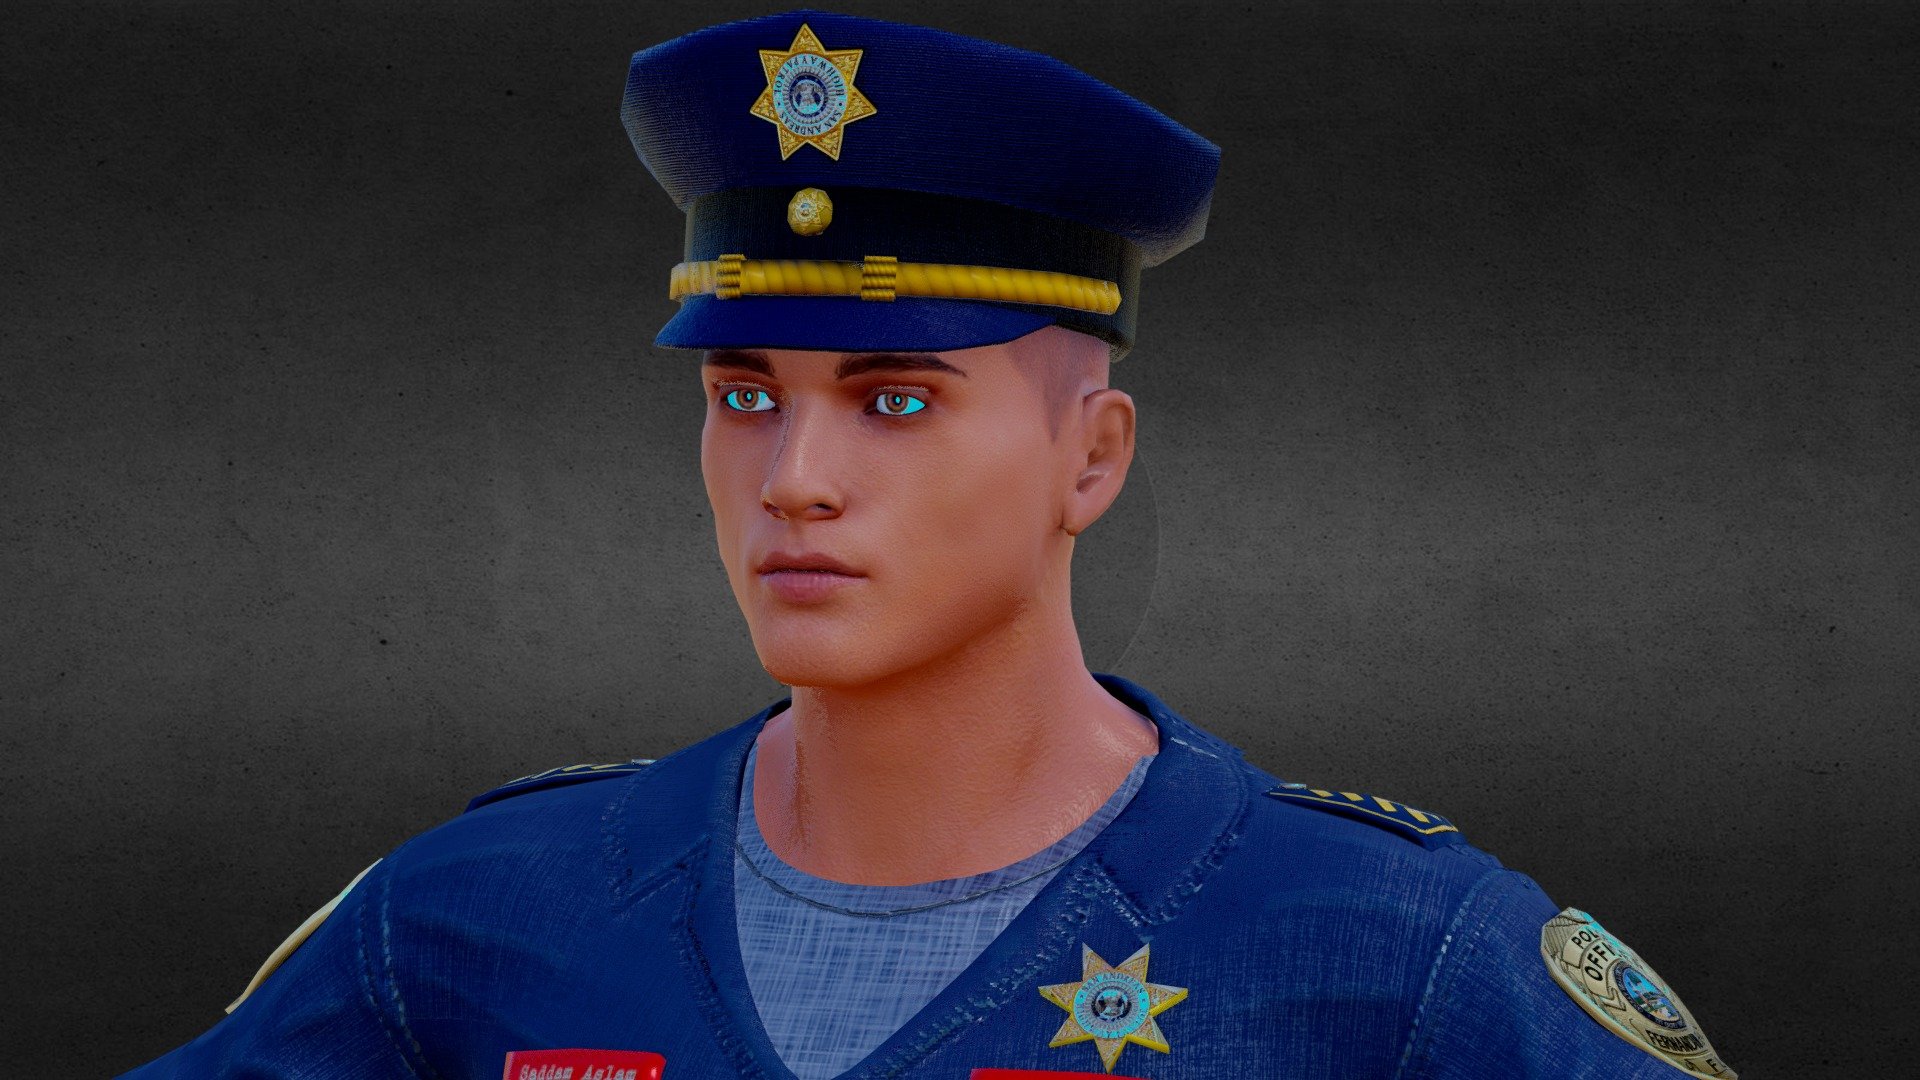 Software Used:
Blender
substance
MarveliousDesigner
Unity - Police Officer 3D Model - 3D model by Blender Artist (@nomi6474) 3d model